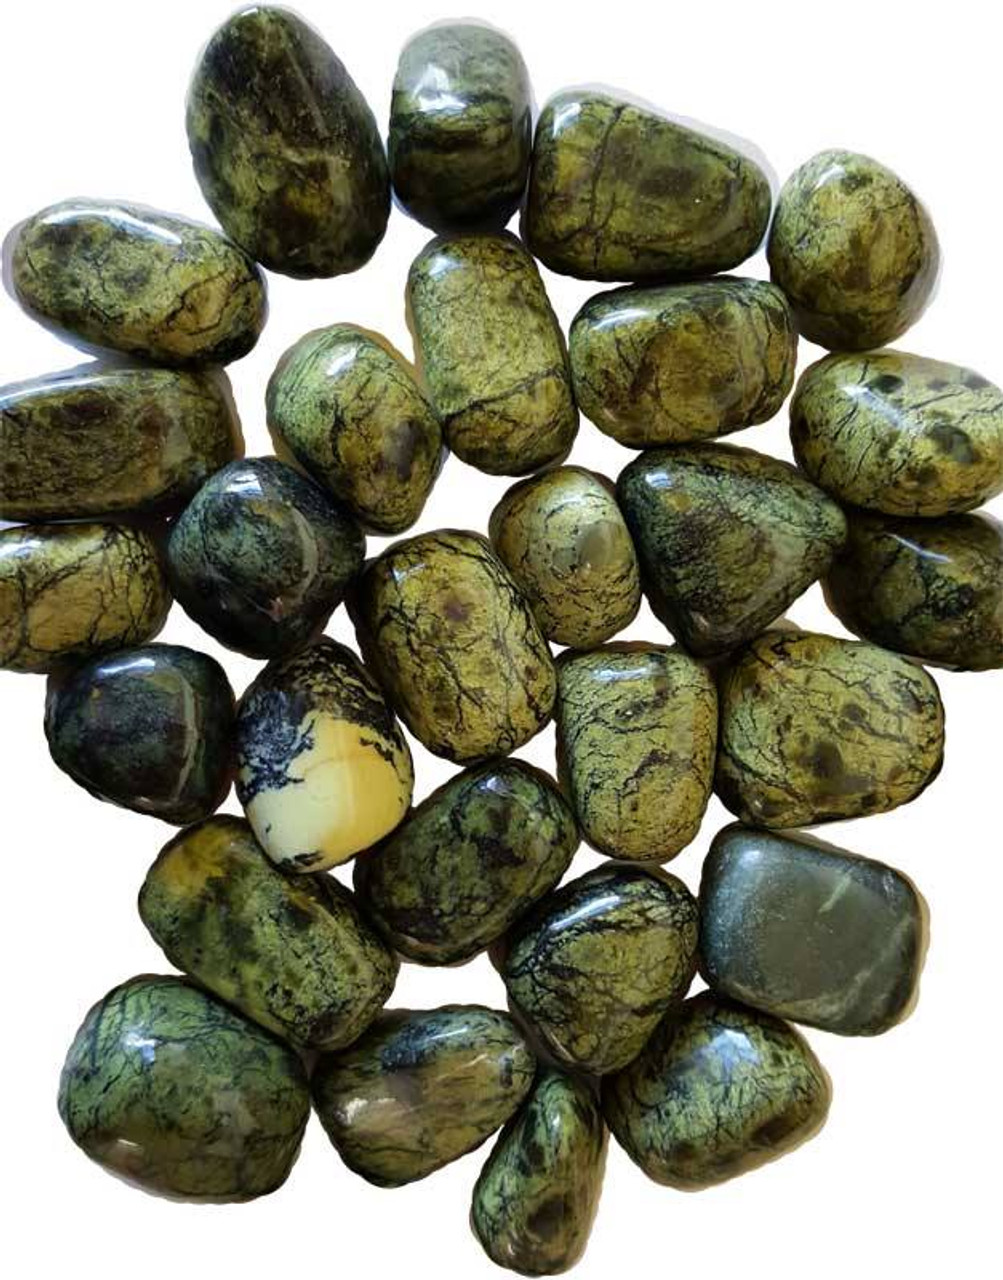 Asterite Serpentine Tumbled Gemstones 1/4 lb.